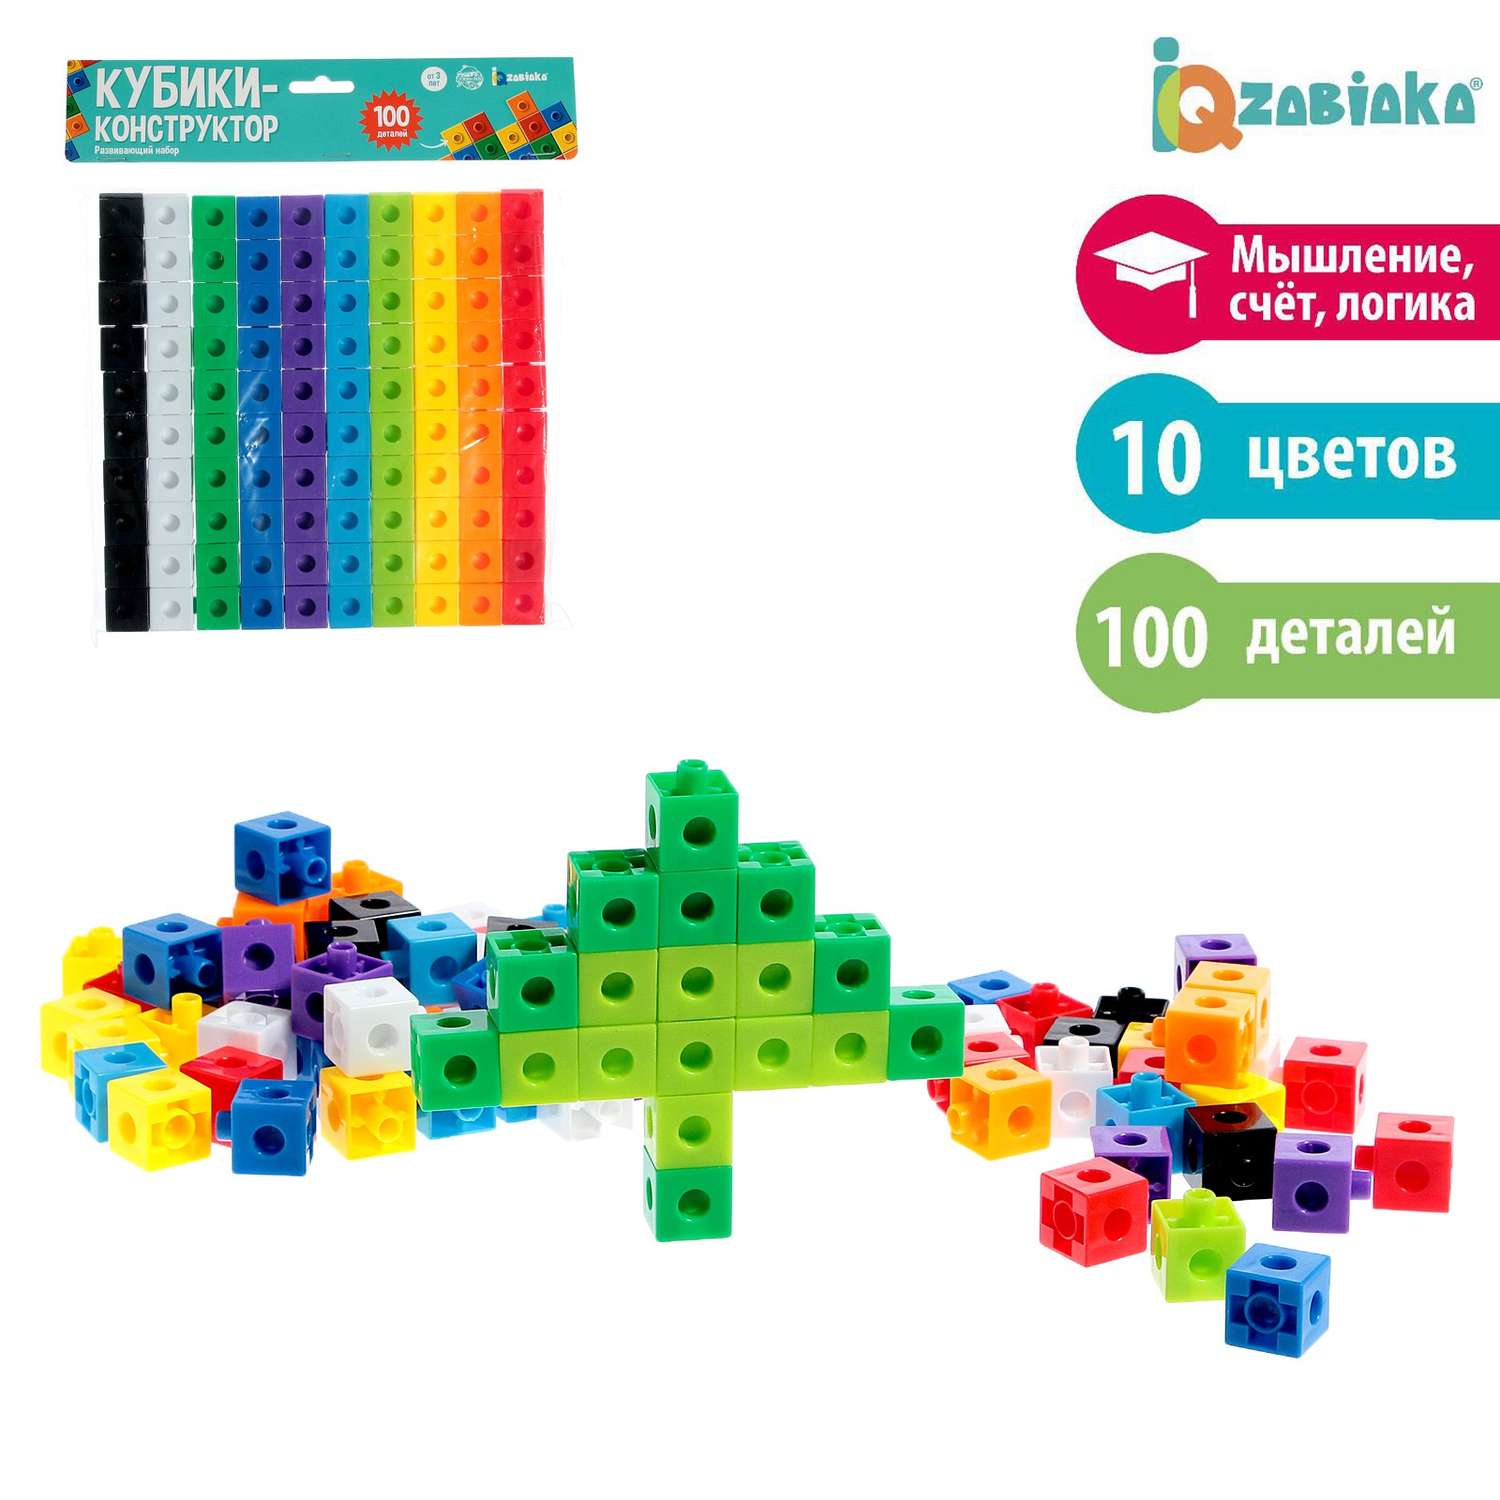 Развивающий набор IQ-ZABIAKA конструктор «Кубики» 100 деталей - фото 1